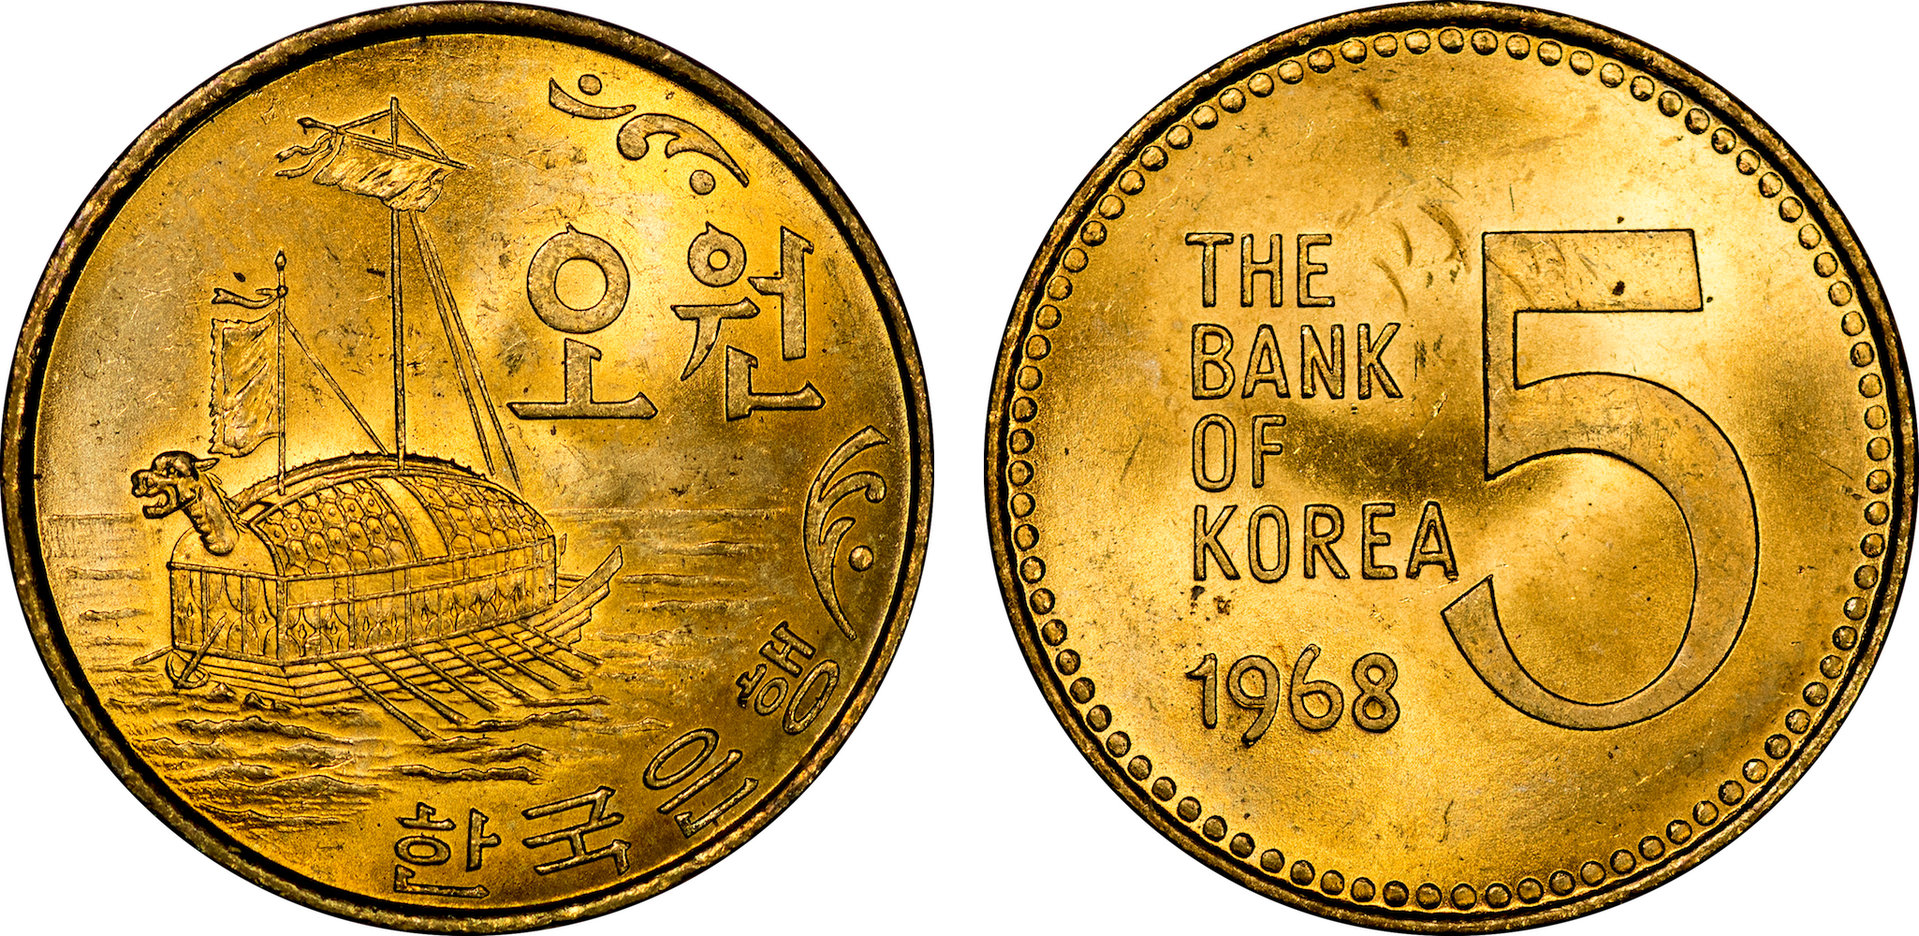 South Korea - 1968 5 Won.jpg